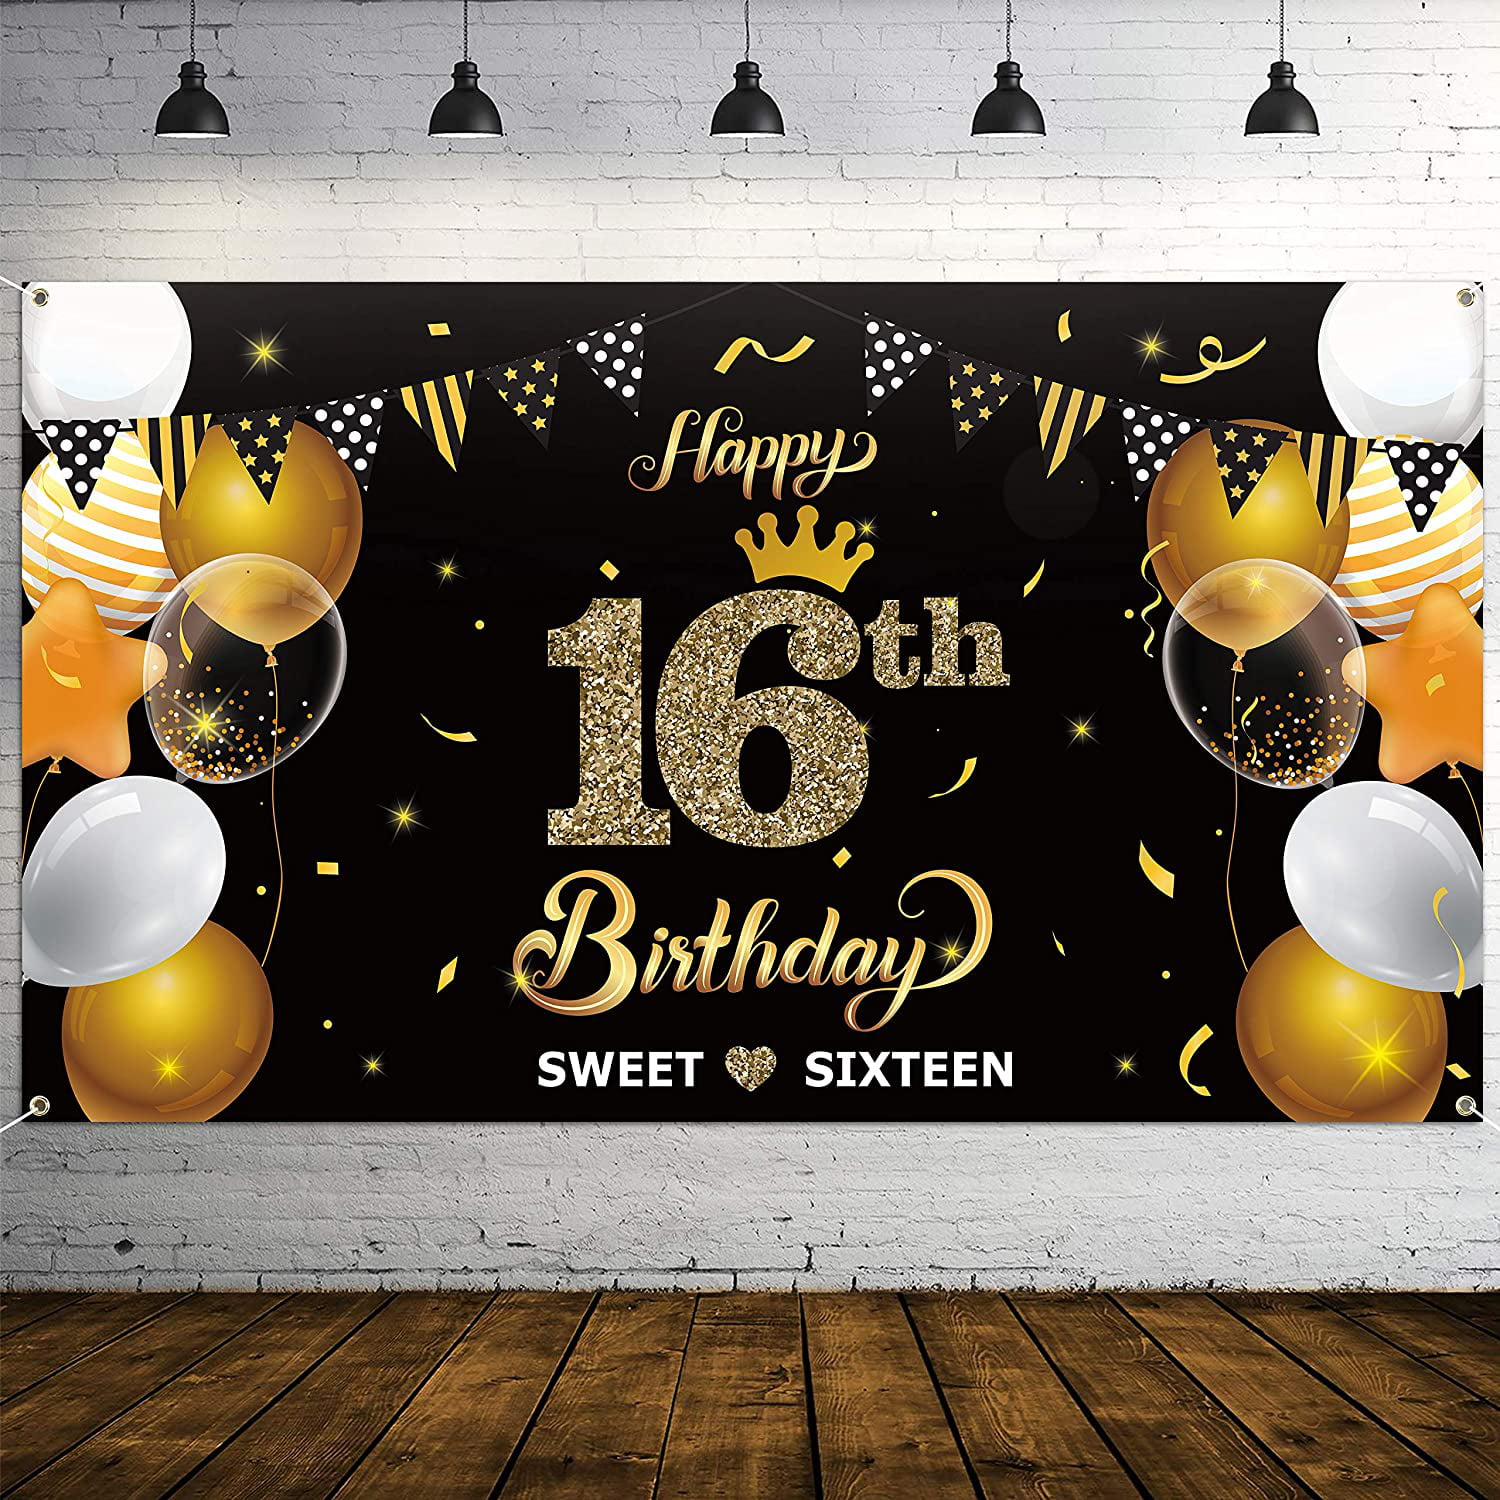 Nếu bạn muốn quà sinh nhật 16 tuổi của mình đẹp như mơ, hãy chọn backdrop sinh nhật 16 tuổi với biểu tượng nổi bật. Kích thước 78” x 45 sẽ giúp cho bữa tiệc của bạn trở nên hoàn hảo hơn bao giờ hết!